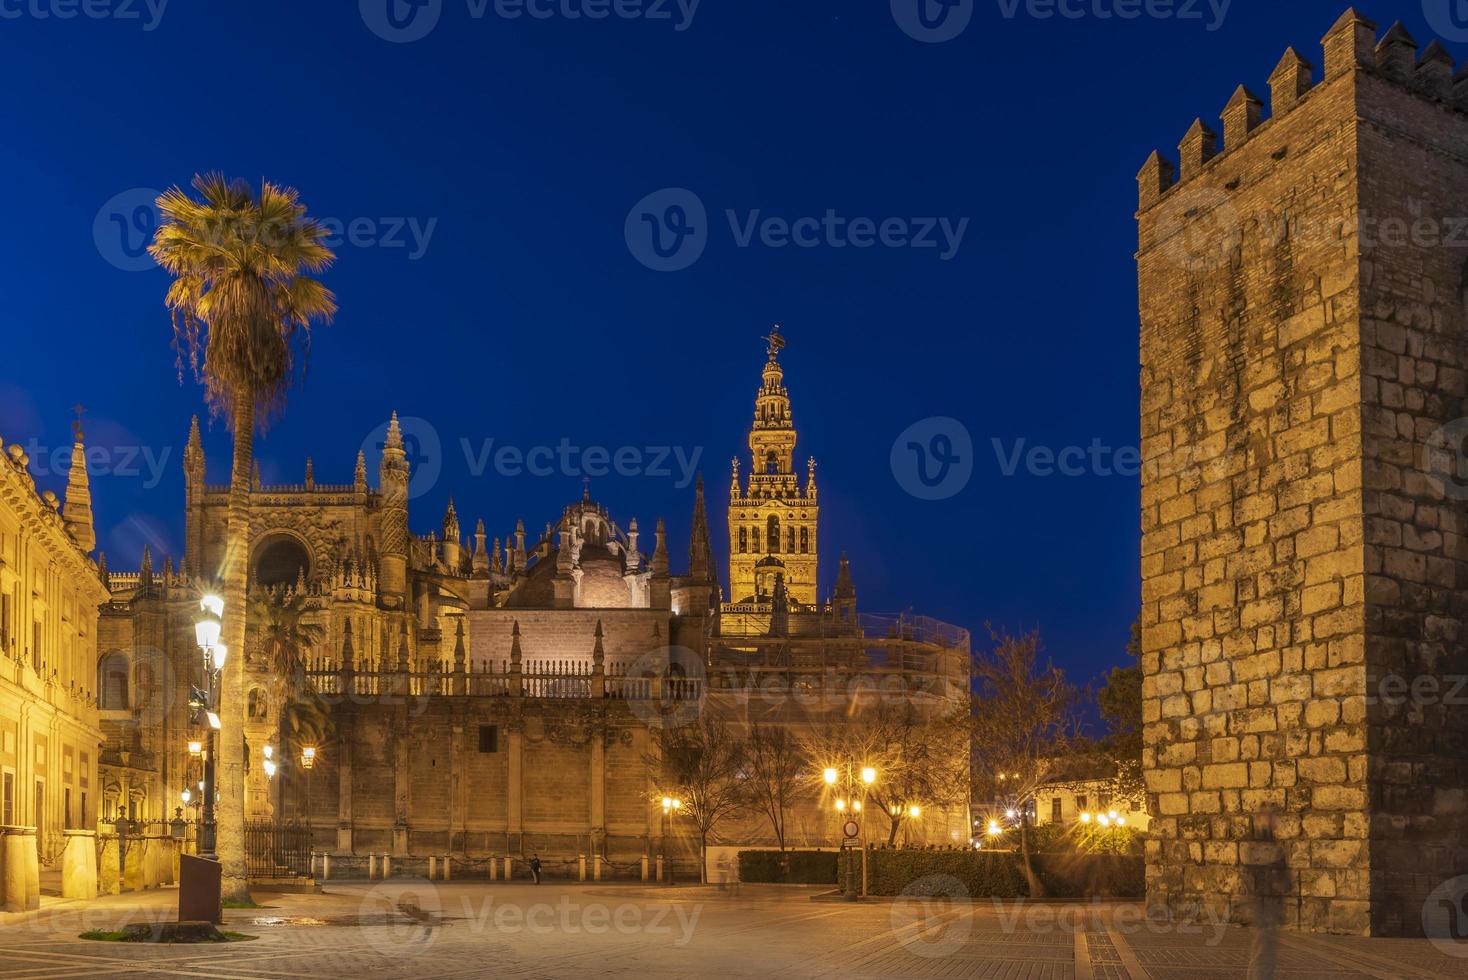 Sevilla catedral es el tercero mas grande Iglesia en el mundo y uno de el hermosa ejemplos de gótico y barroco arquitectónico estilos y giralda el campana torre de es 104.1 metros alto foto